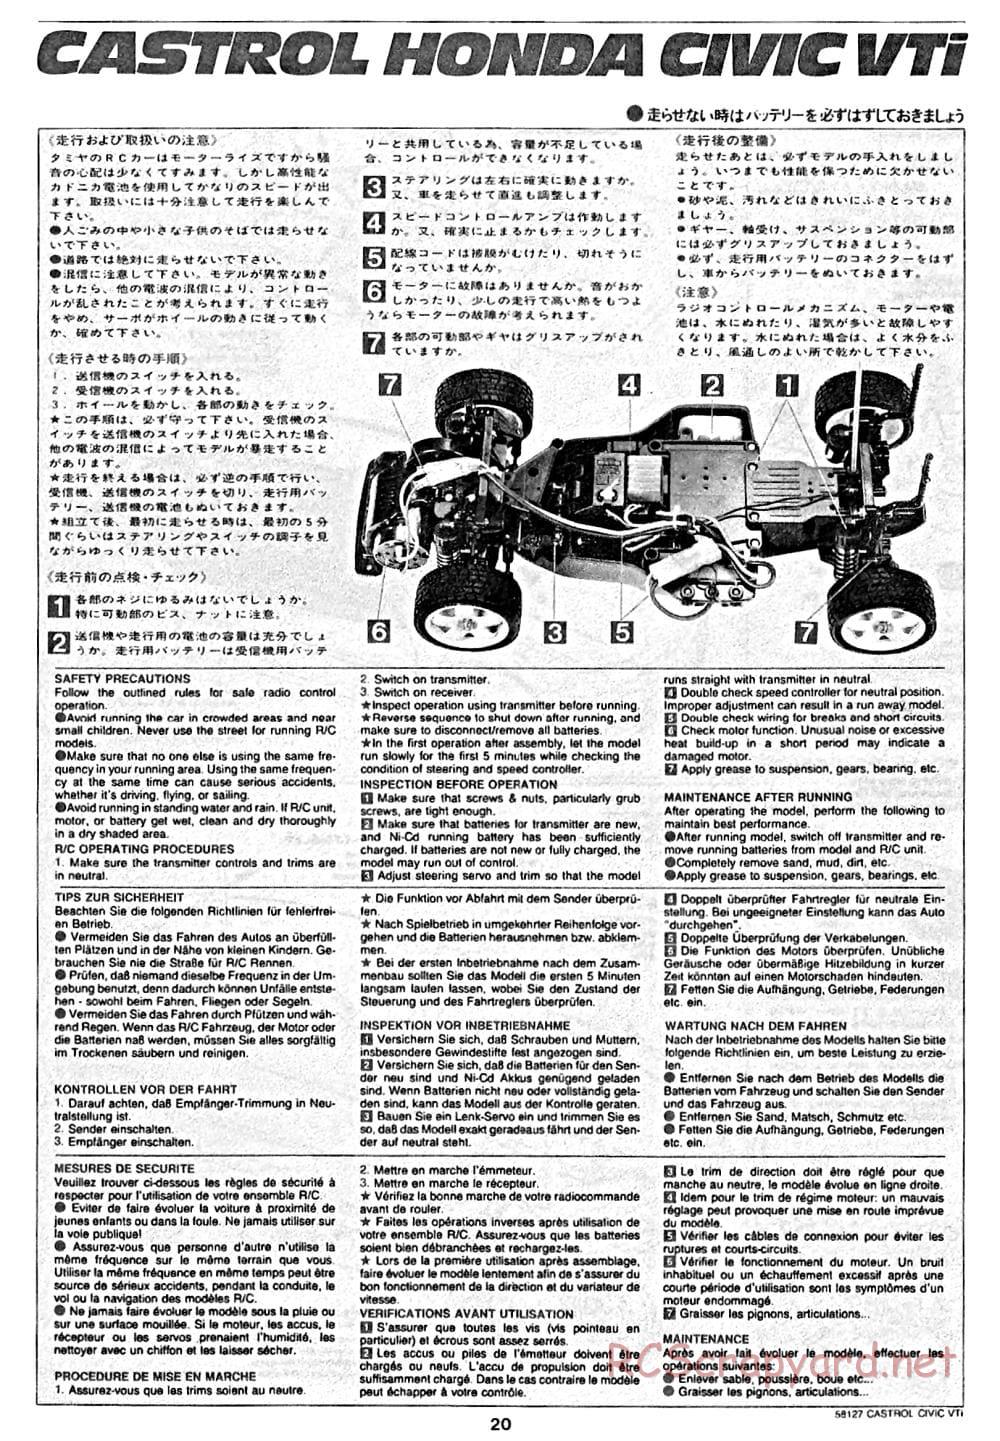 Tamiya - Castrol Honda Civic VTi - FF-01 Chassis - Manual - Page 20